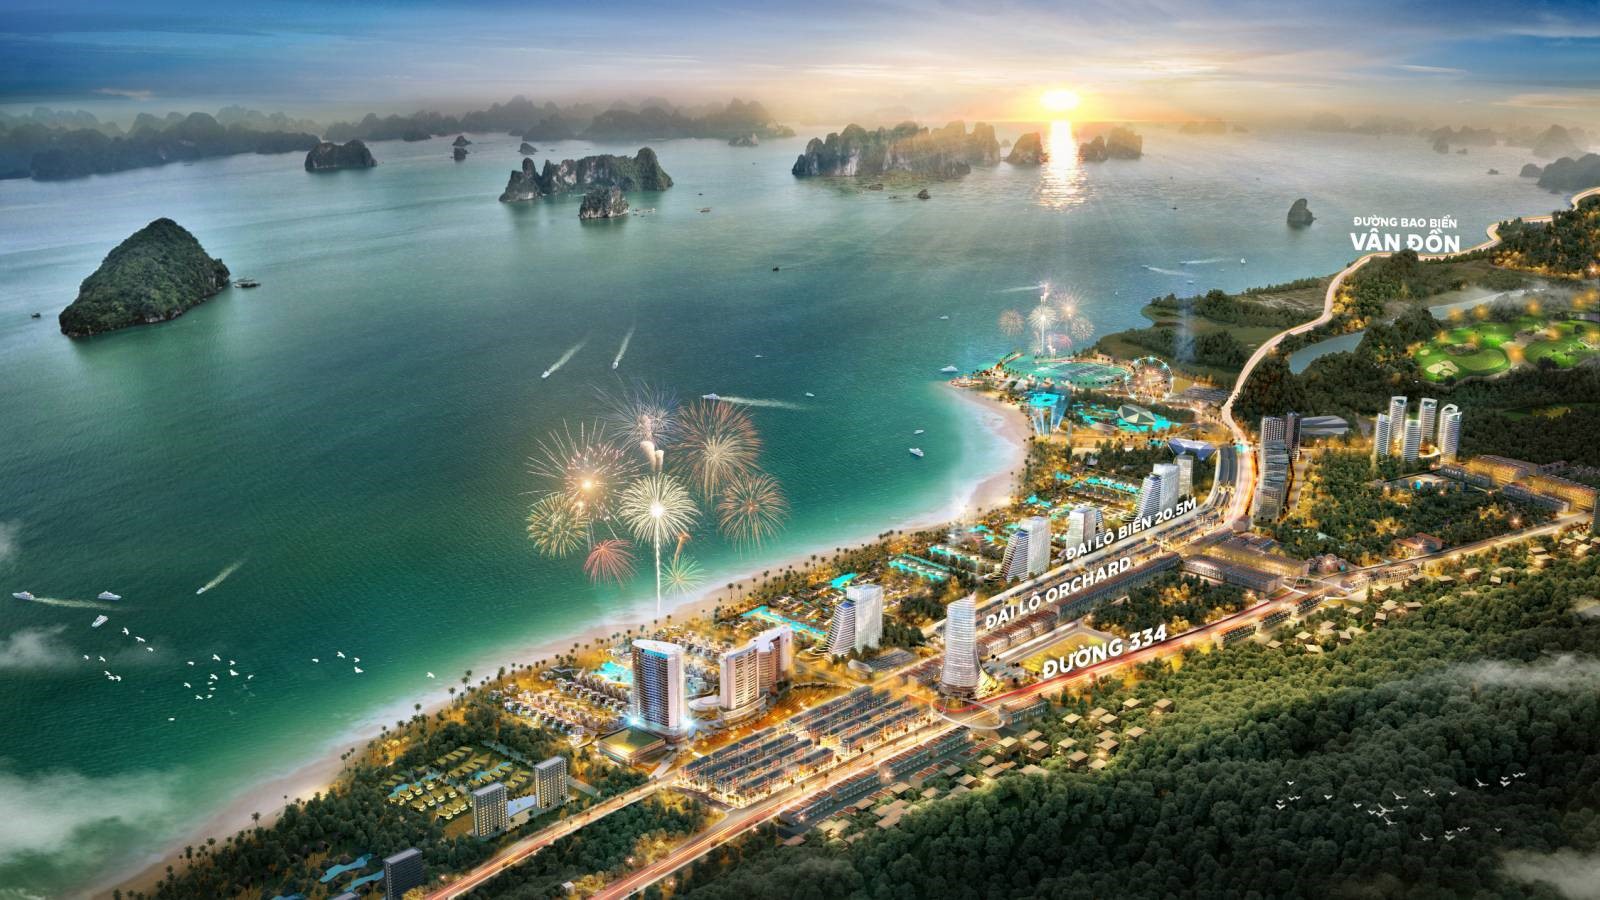 Sonasea Van Don Harbor City anh 2  - anh_1 - CEO Group hoàn thành kế hoạch 2021, kỳ vọng bứt phá trong năm 2022